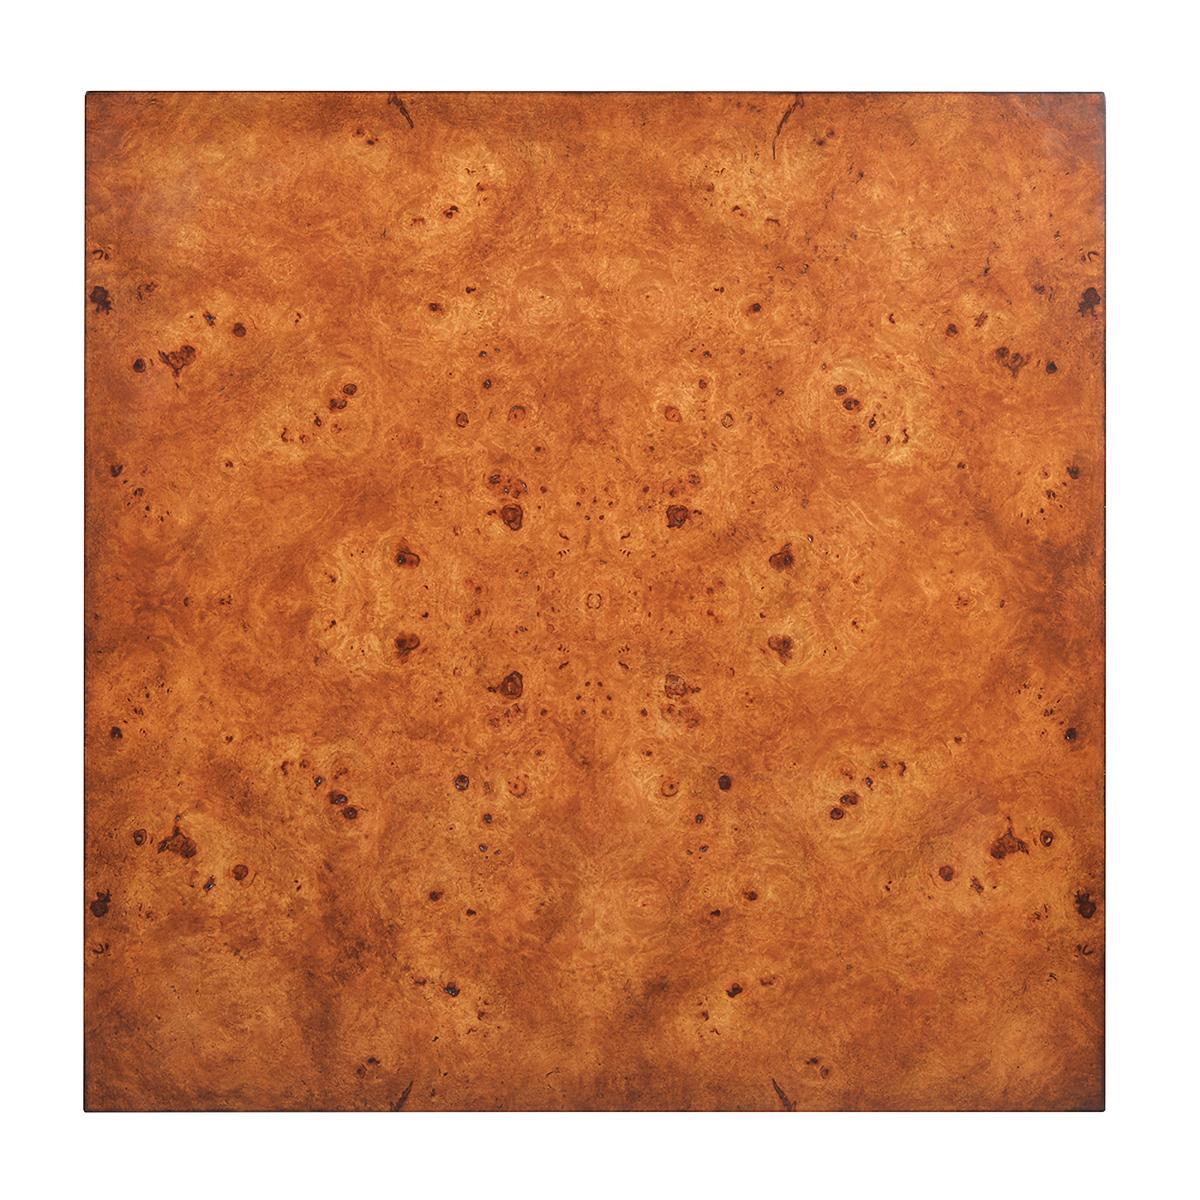 Moderner kubistischer Beistelltisch aus Wurzelholz mit handgeriebenem Mappa-Maserfurnier, warmem rustikalem Finish und dezenter Maserung, auf einem quadratischen Sockel.

Abmessungen: 24